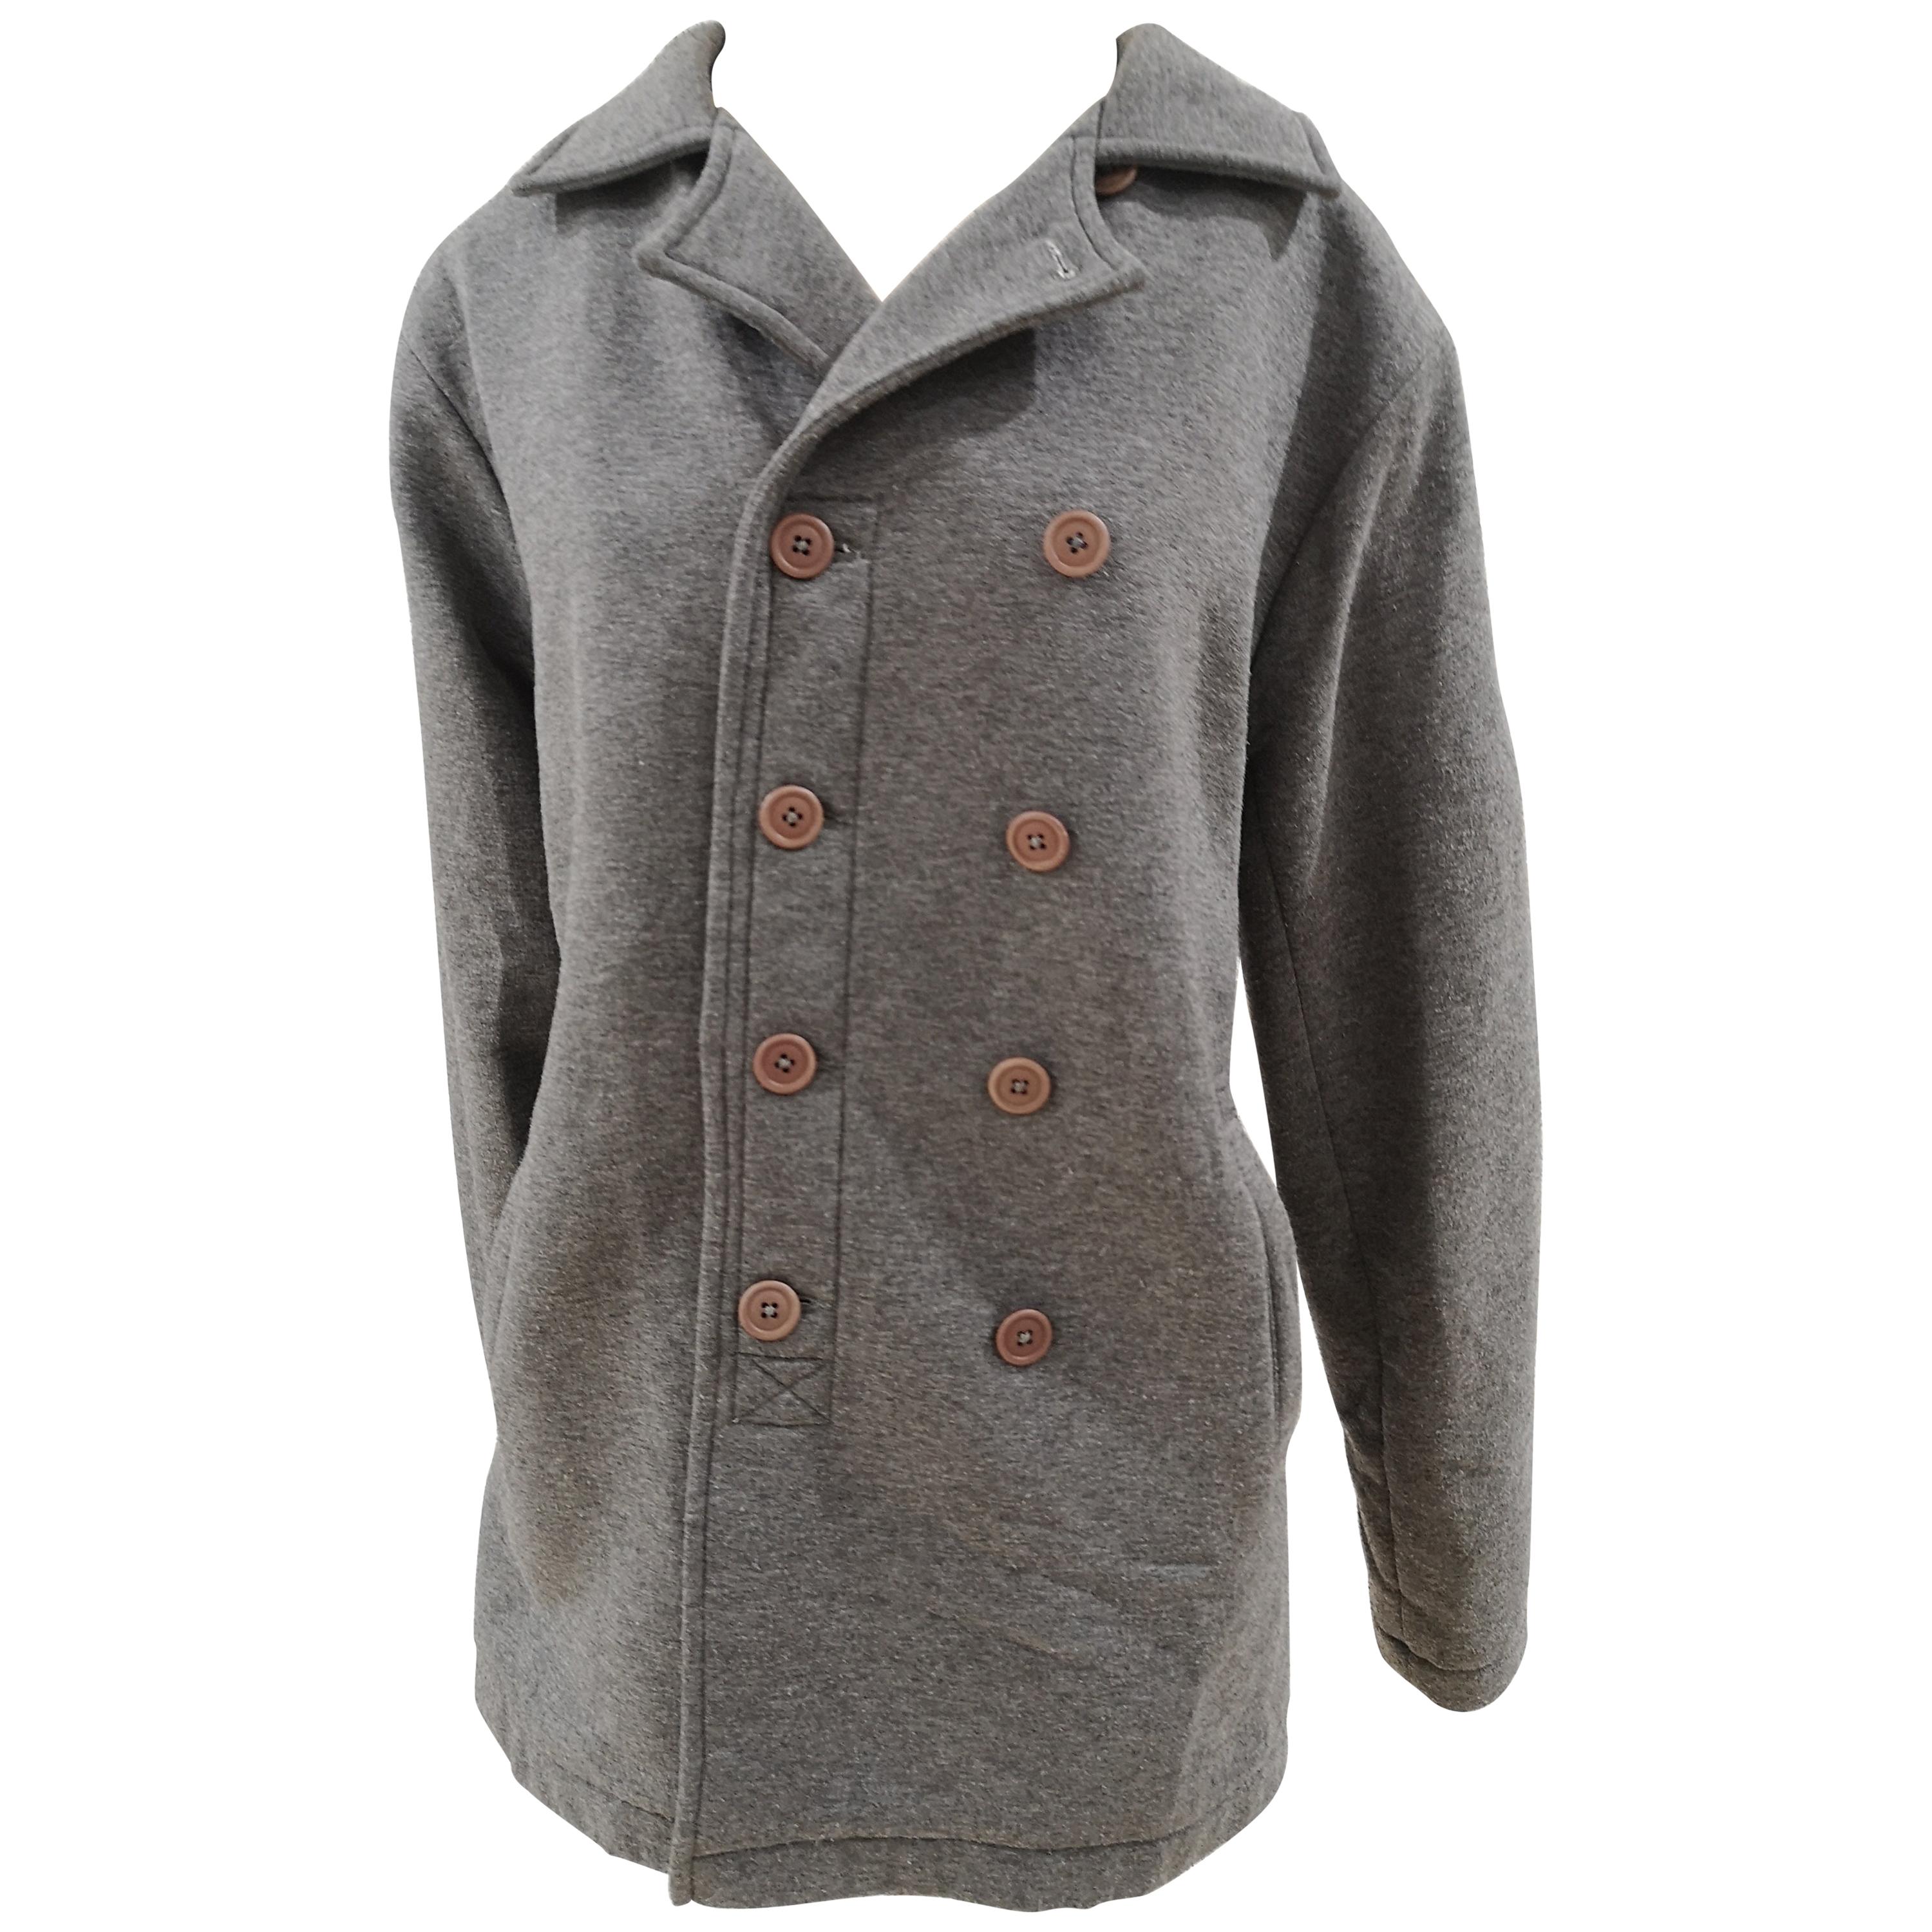 Original Vintage Style grey wool jacket